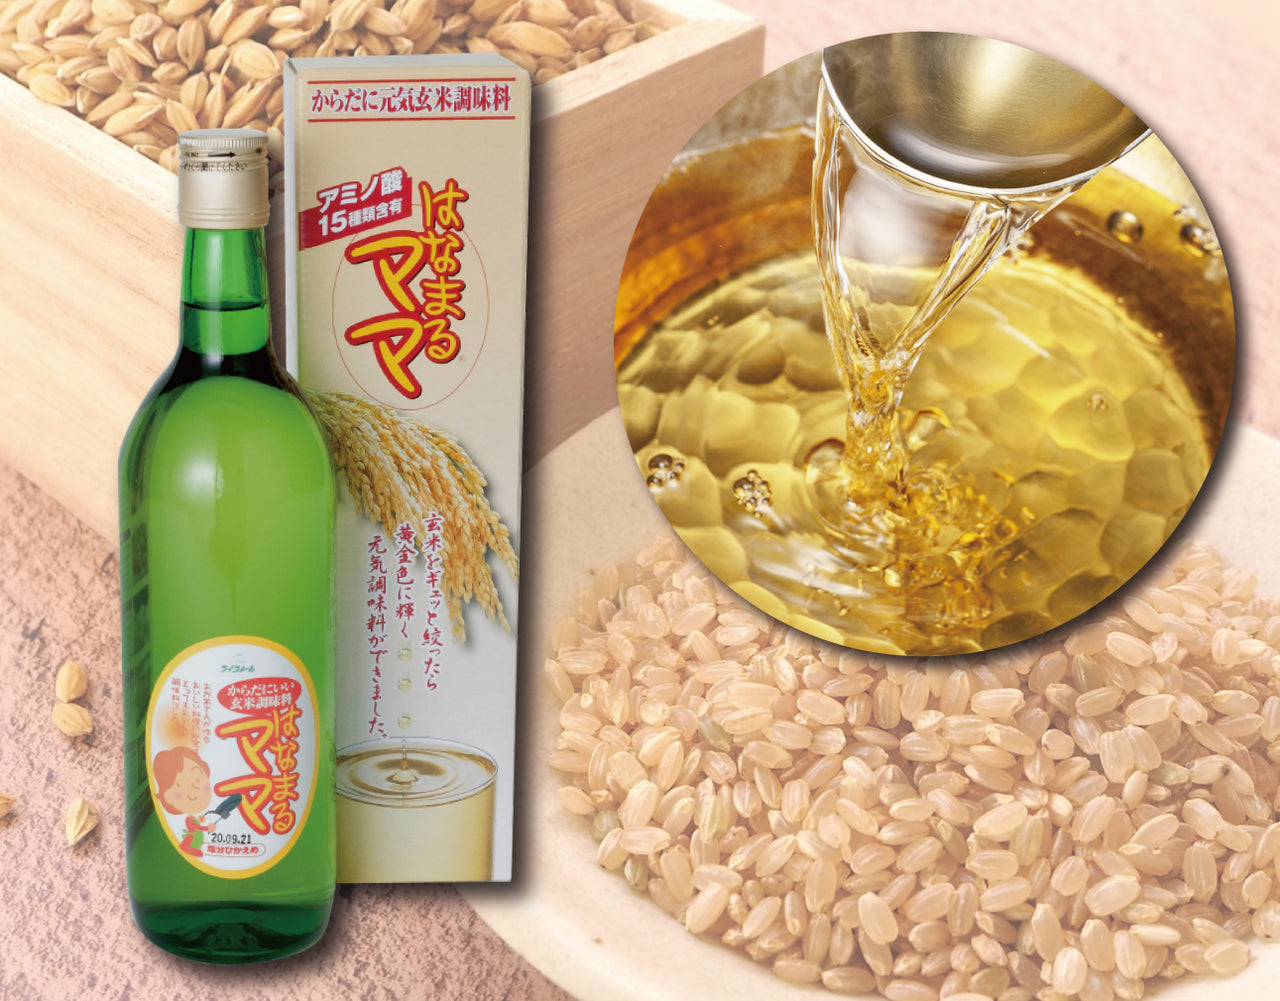 【定期】玄米醗酵アミノ酸調味料 はなまるママ